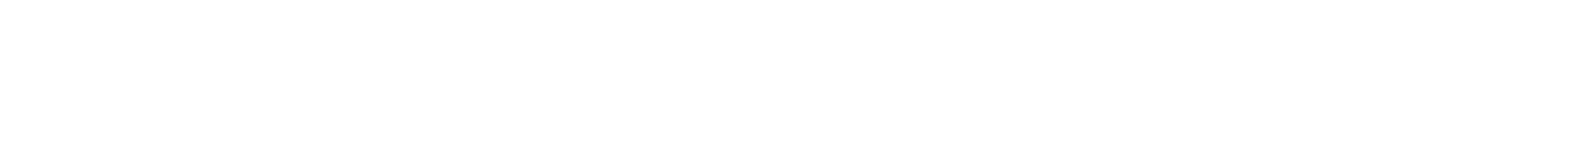 Giordano Logo groß für dunkle Hintergründe (transparentes PNG)